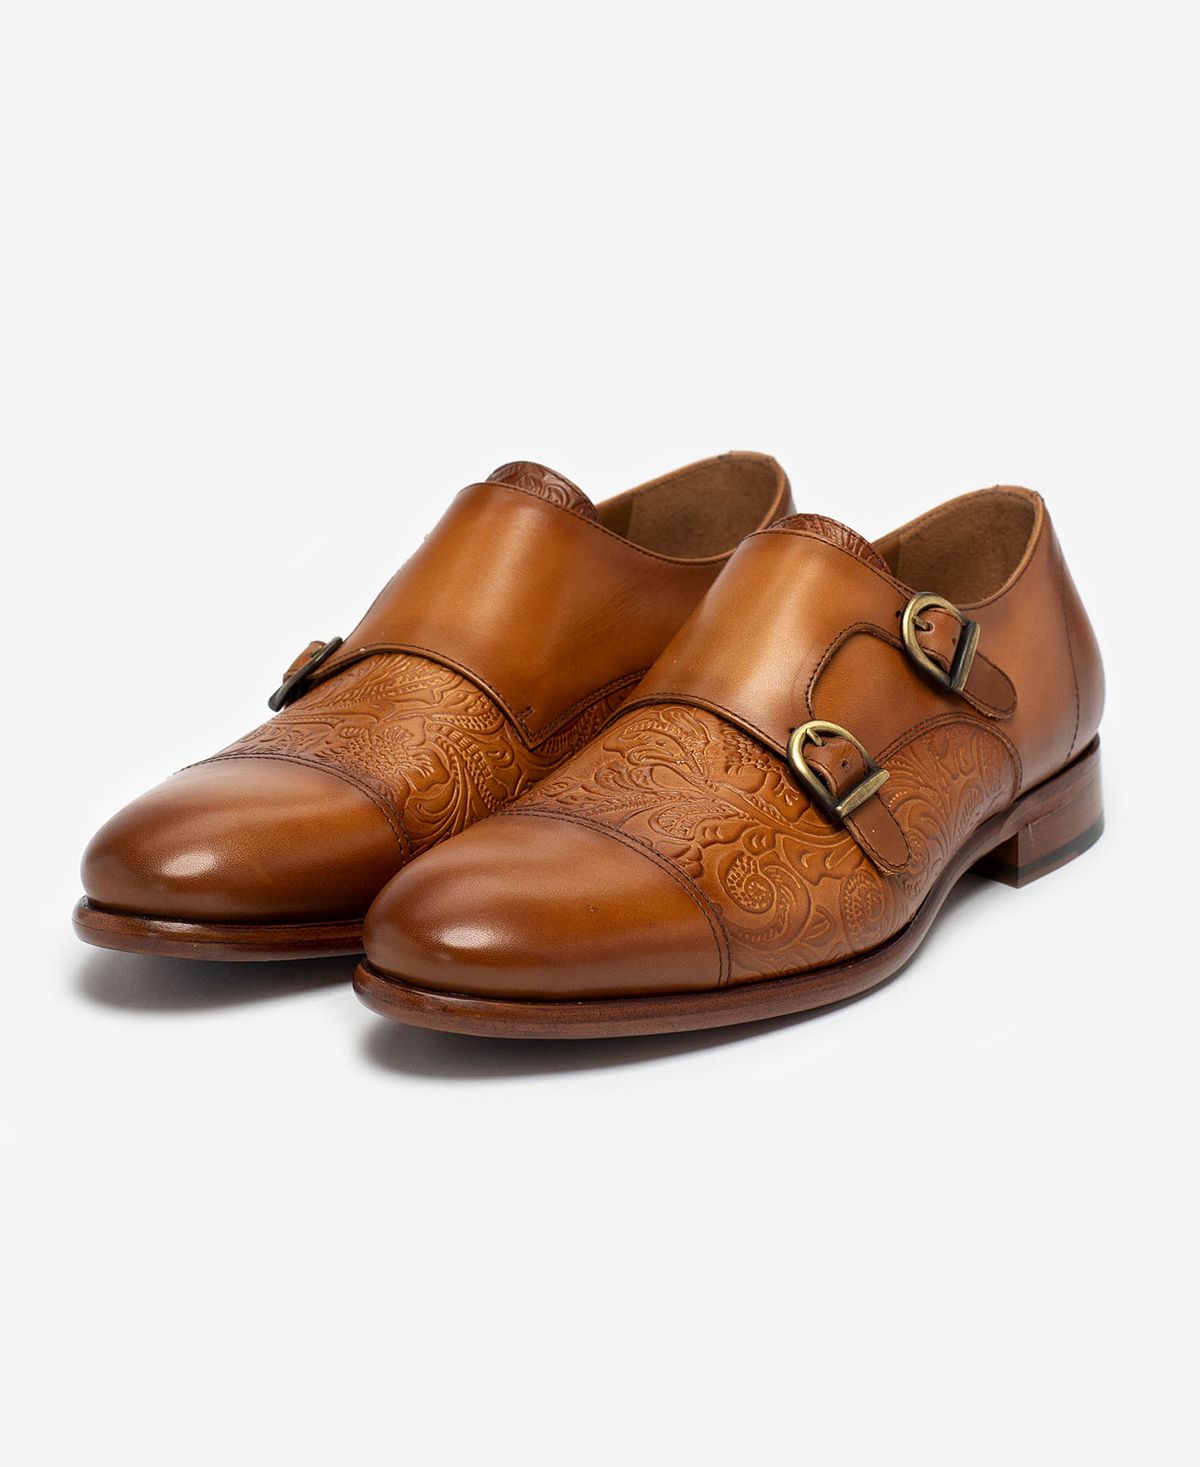 цена Мужские модельные туфли lucca с тиснением и цветочным принтом на ремешках из кожи Taft, мульти